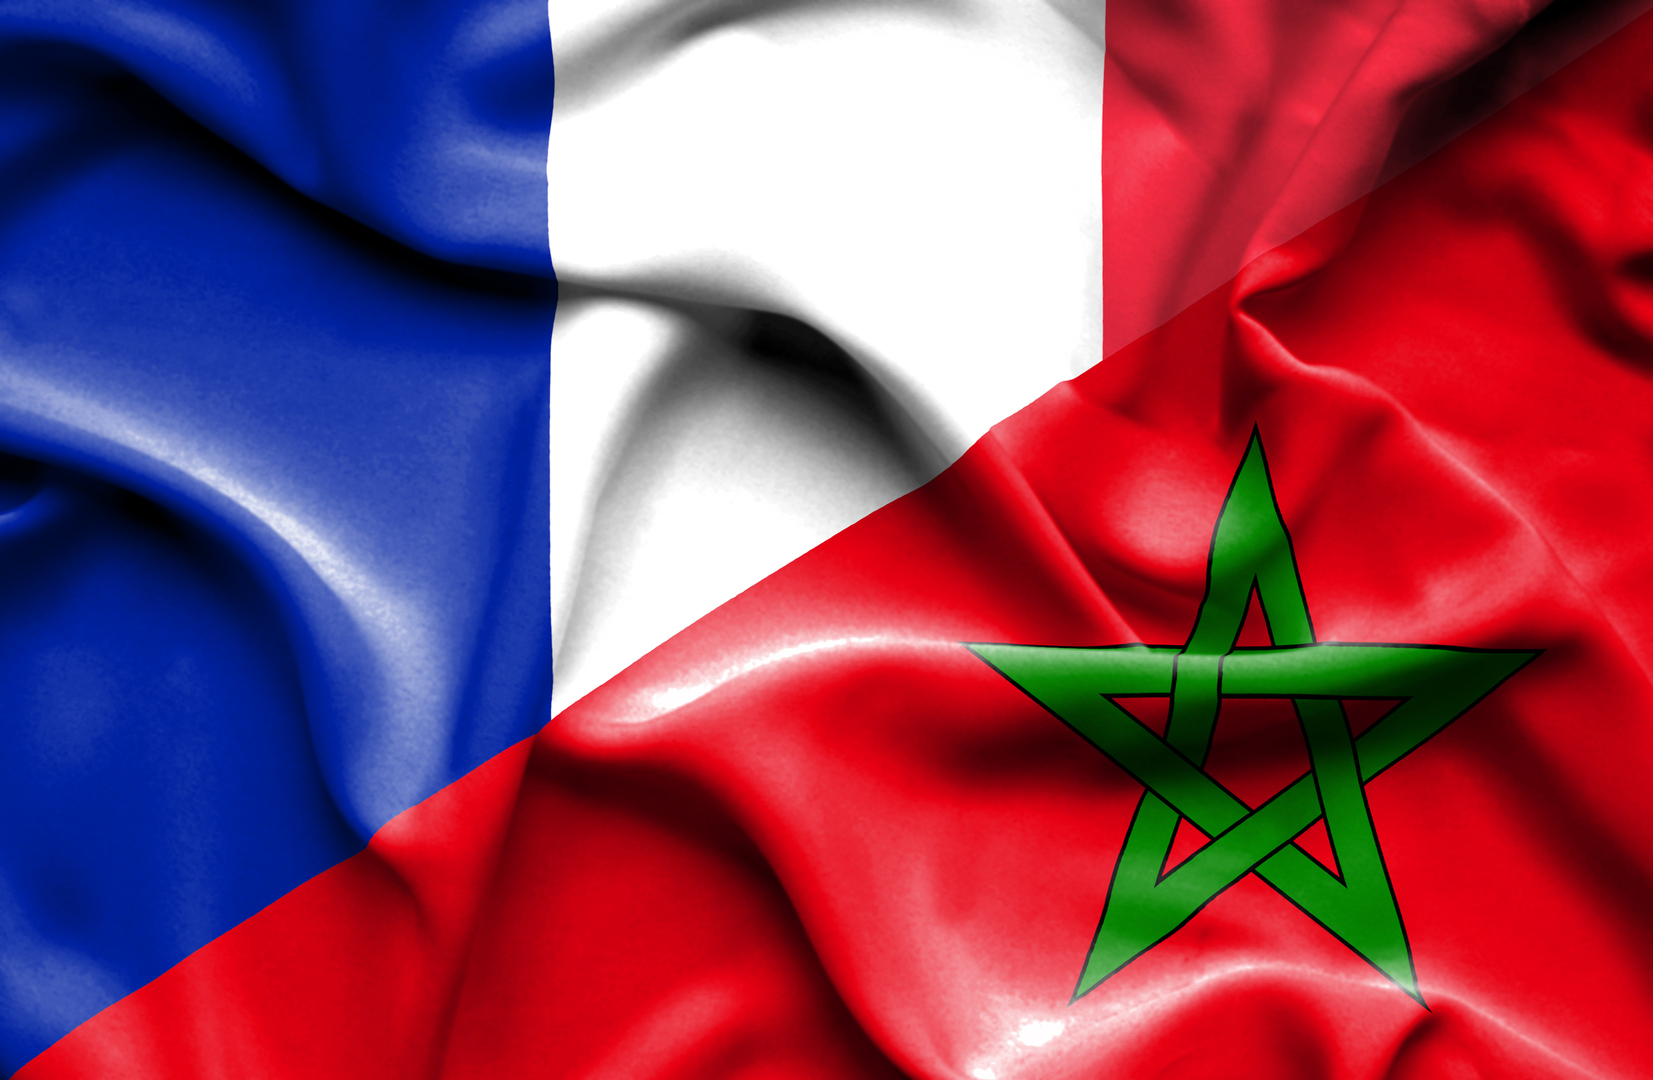 دعوى قضائية ضد استهداف المغرب في فرنسا